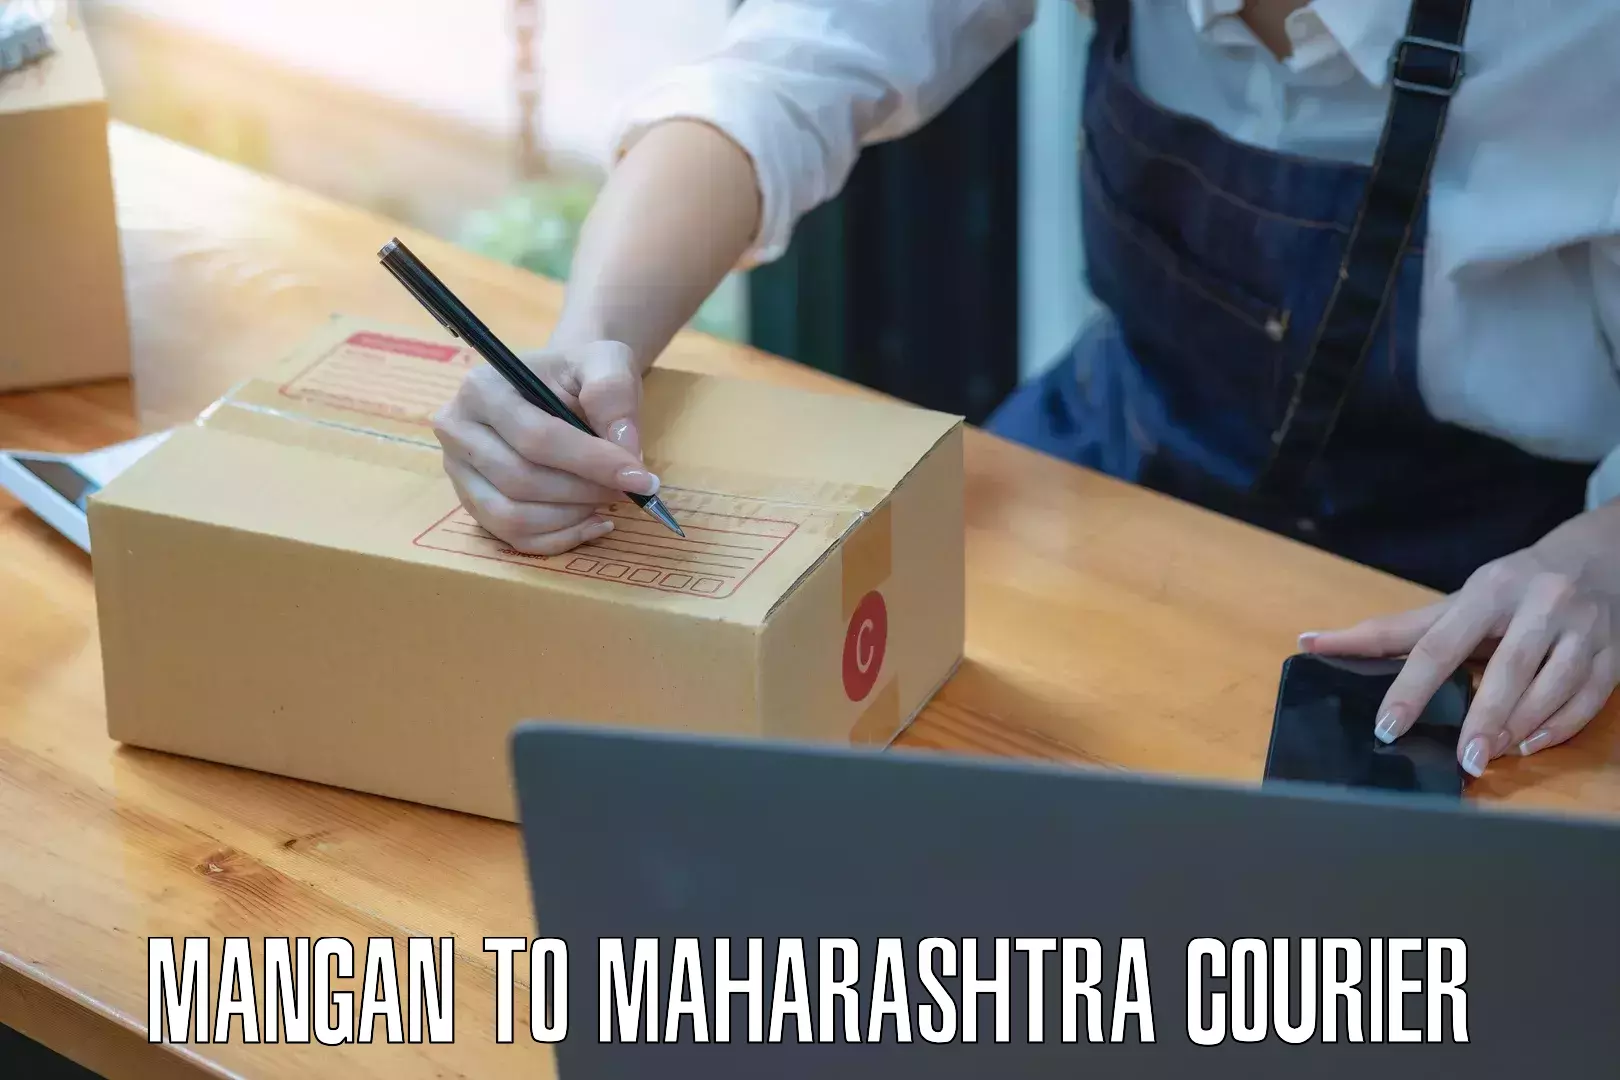 Doorstep delivery service Mangan to Maharashtra